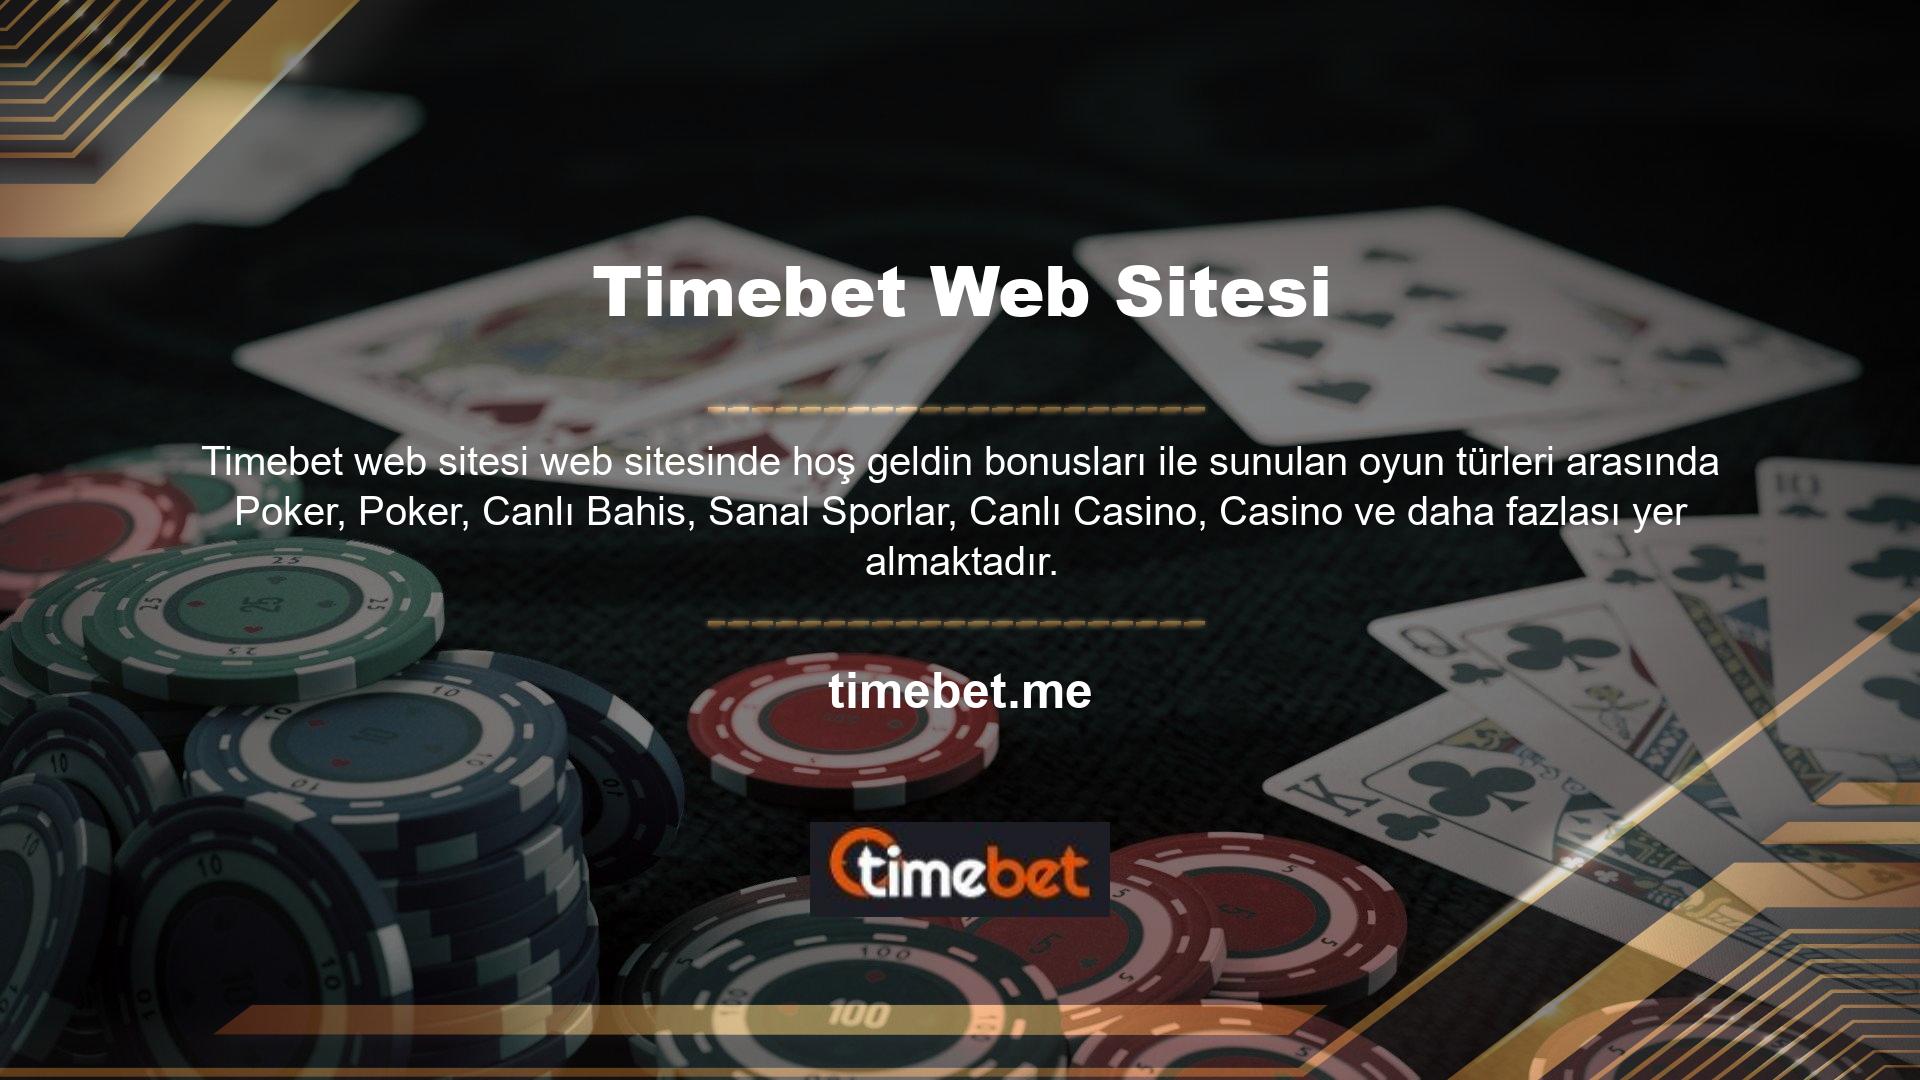 Timebet Bahis sürekli güncellenen bir web sitesidir ve yapılan değişiklikler her zaman üyelerini şaşırtmaktadır